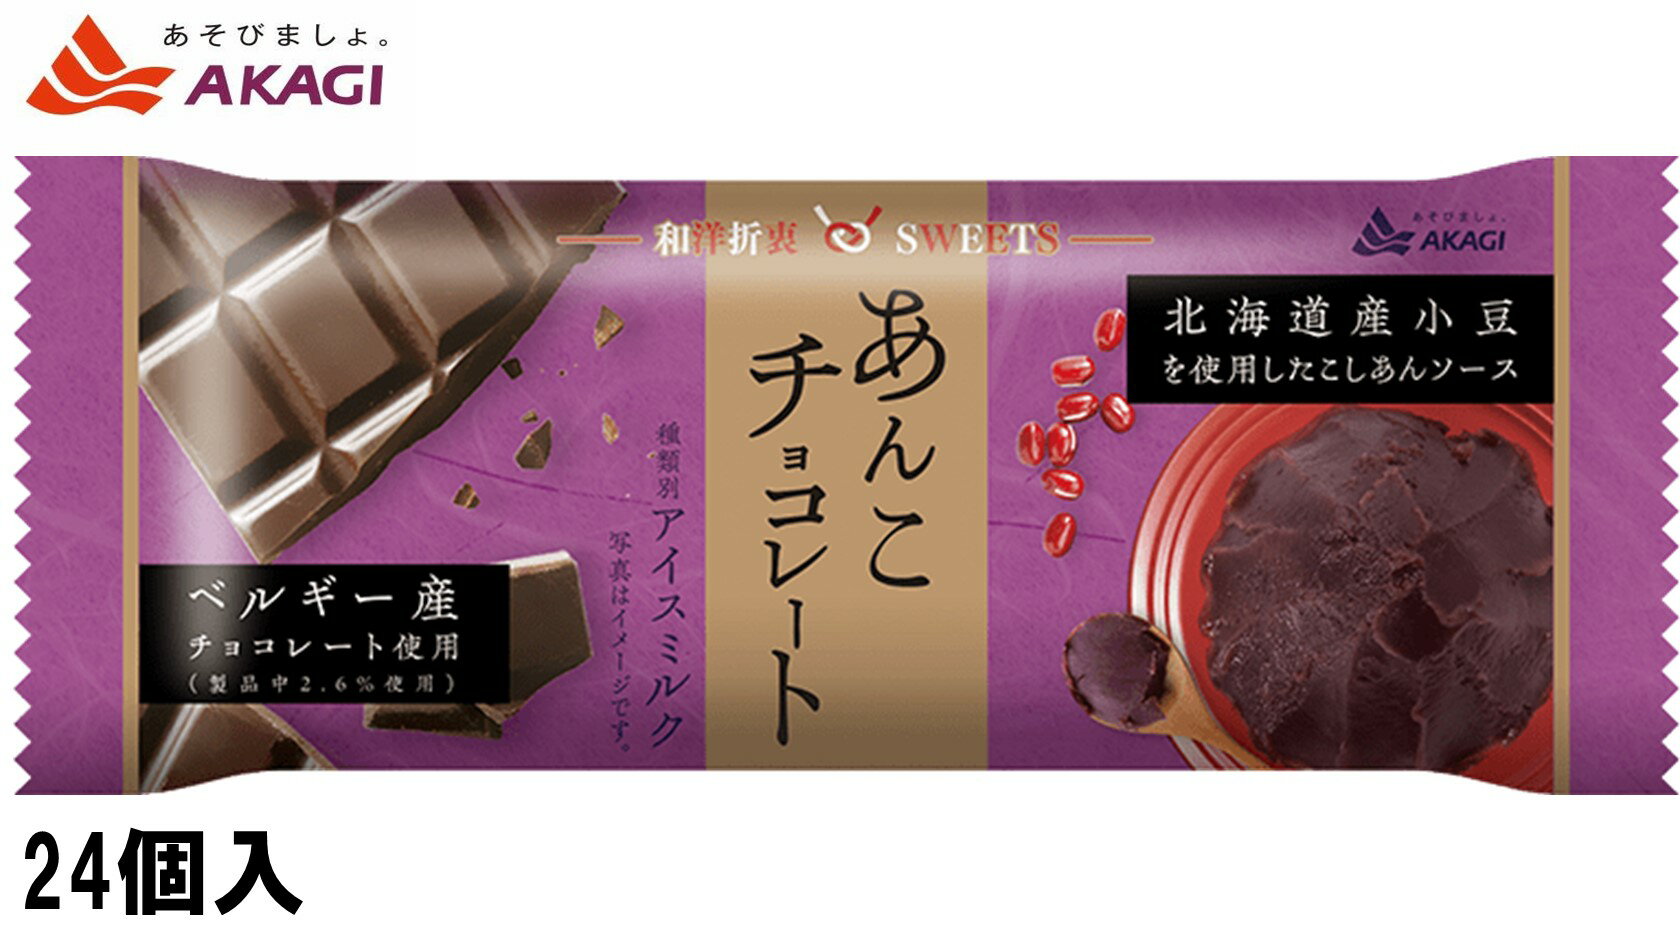 あんことチョコレートの組み合わせで、コクと風味豊かな味わいが特徴の、和洋折衷スイーツです。 ※北海道・九州は別途送料が掛かります。 沖縄・離島発送出来ませんので予めご了承下さい。